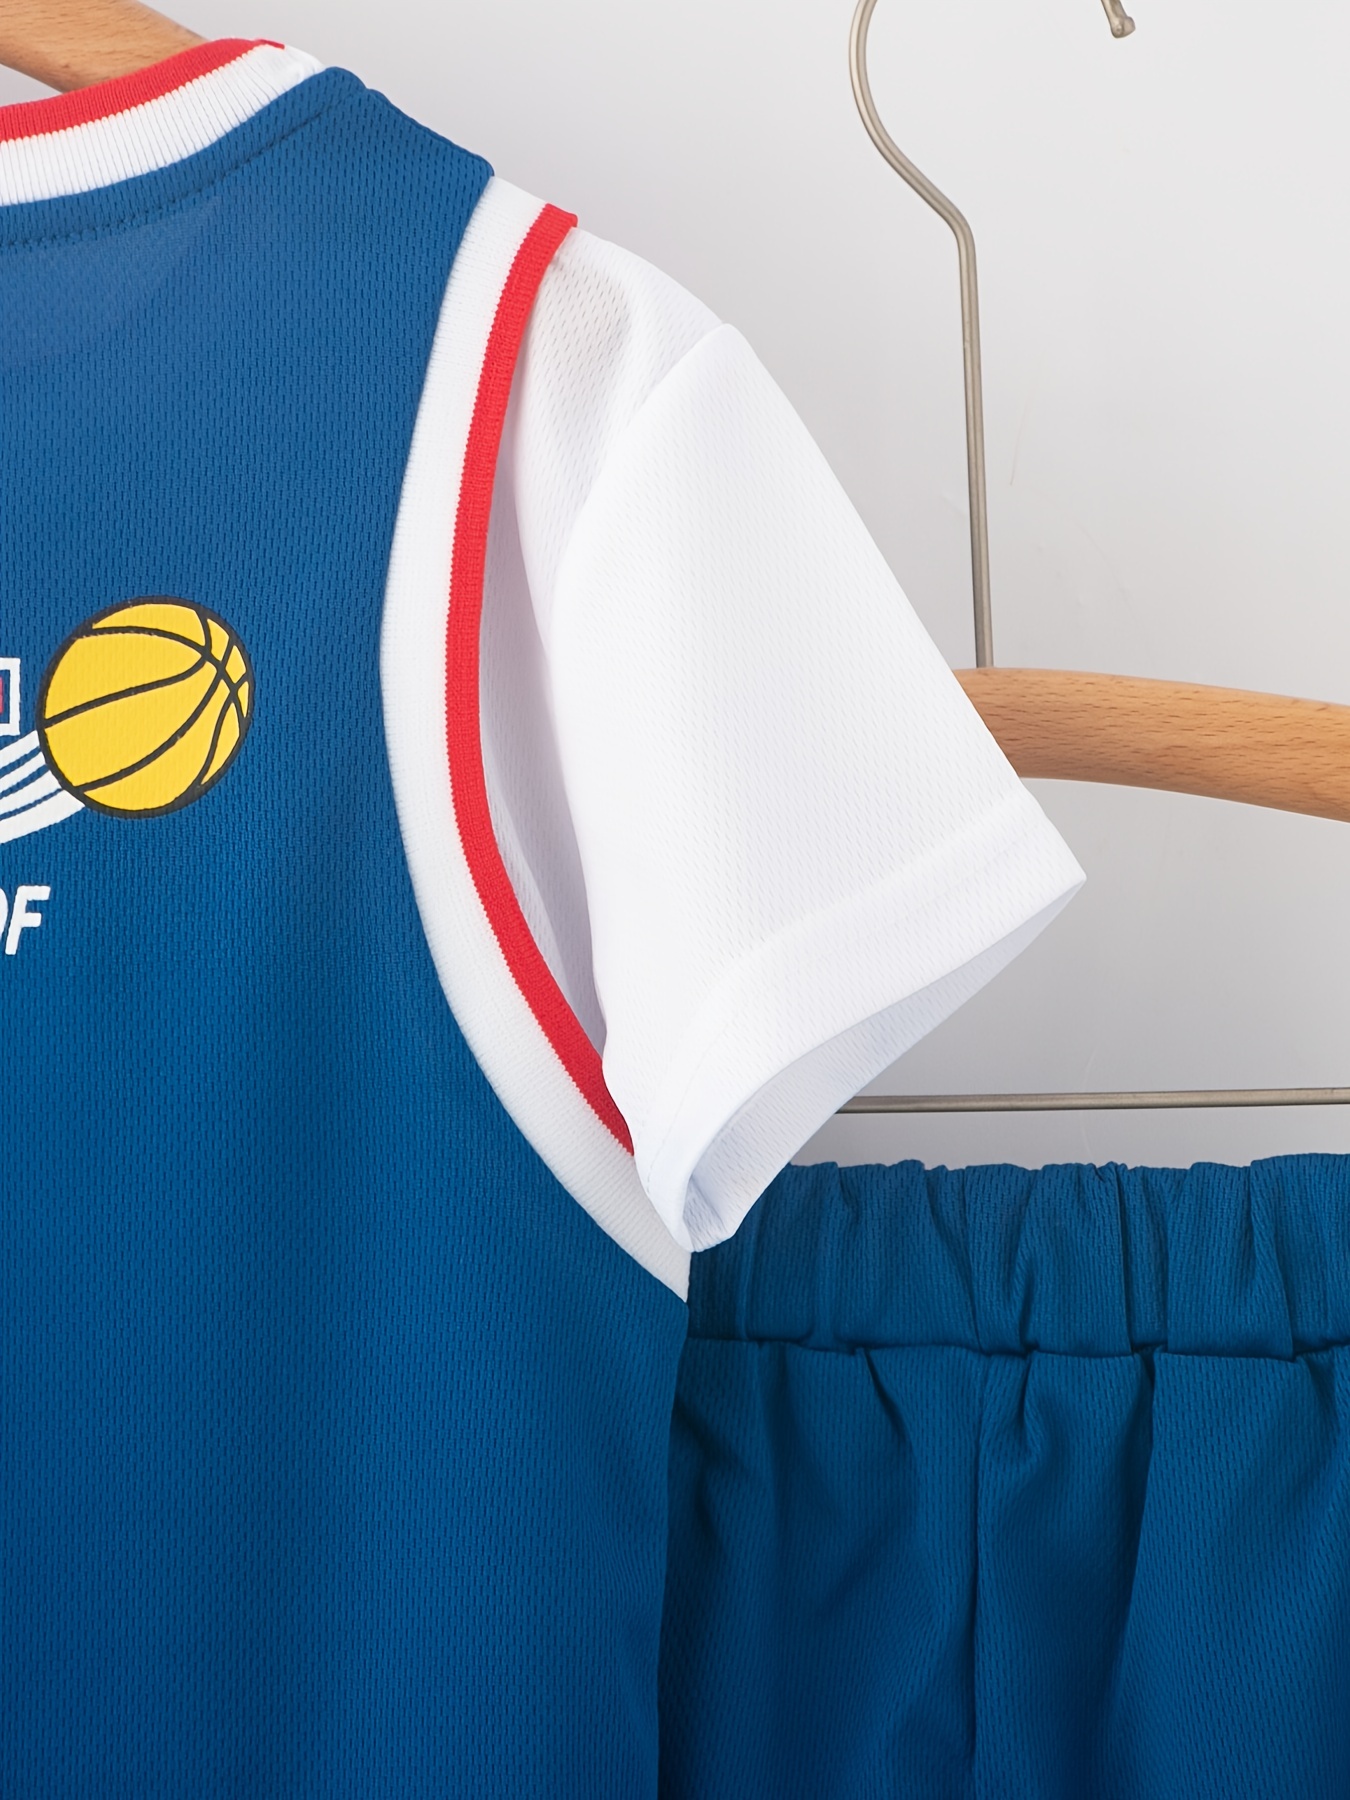 Fotos de Camiseta Baloncesto Ninos, +40.000 Fotos de stock gratuitas de  gran calidad